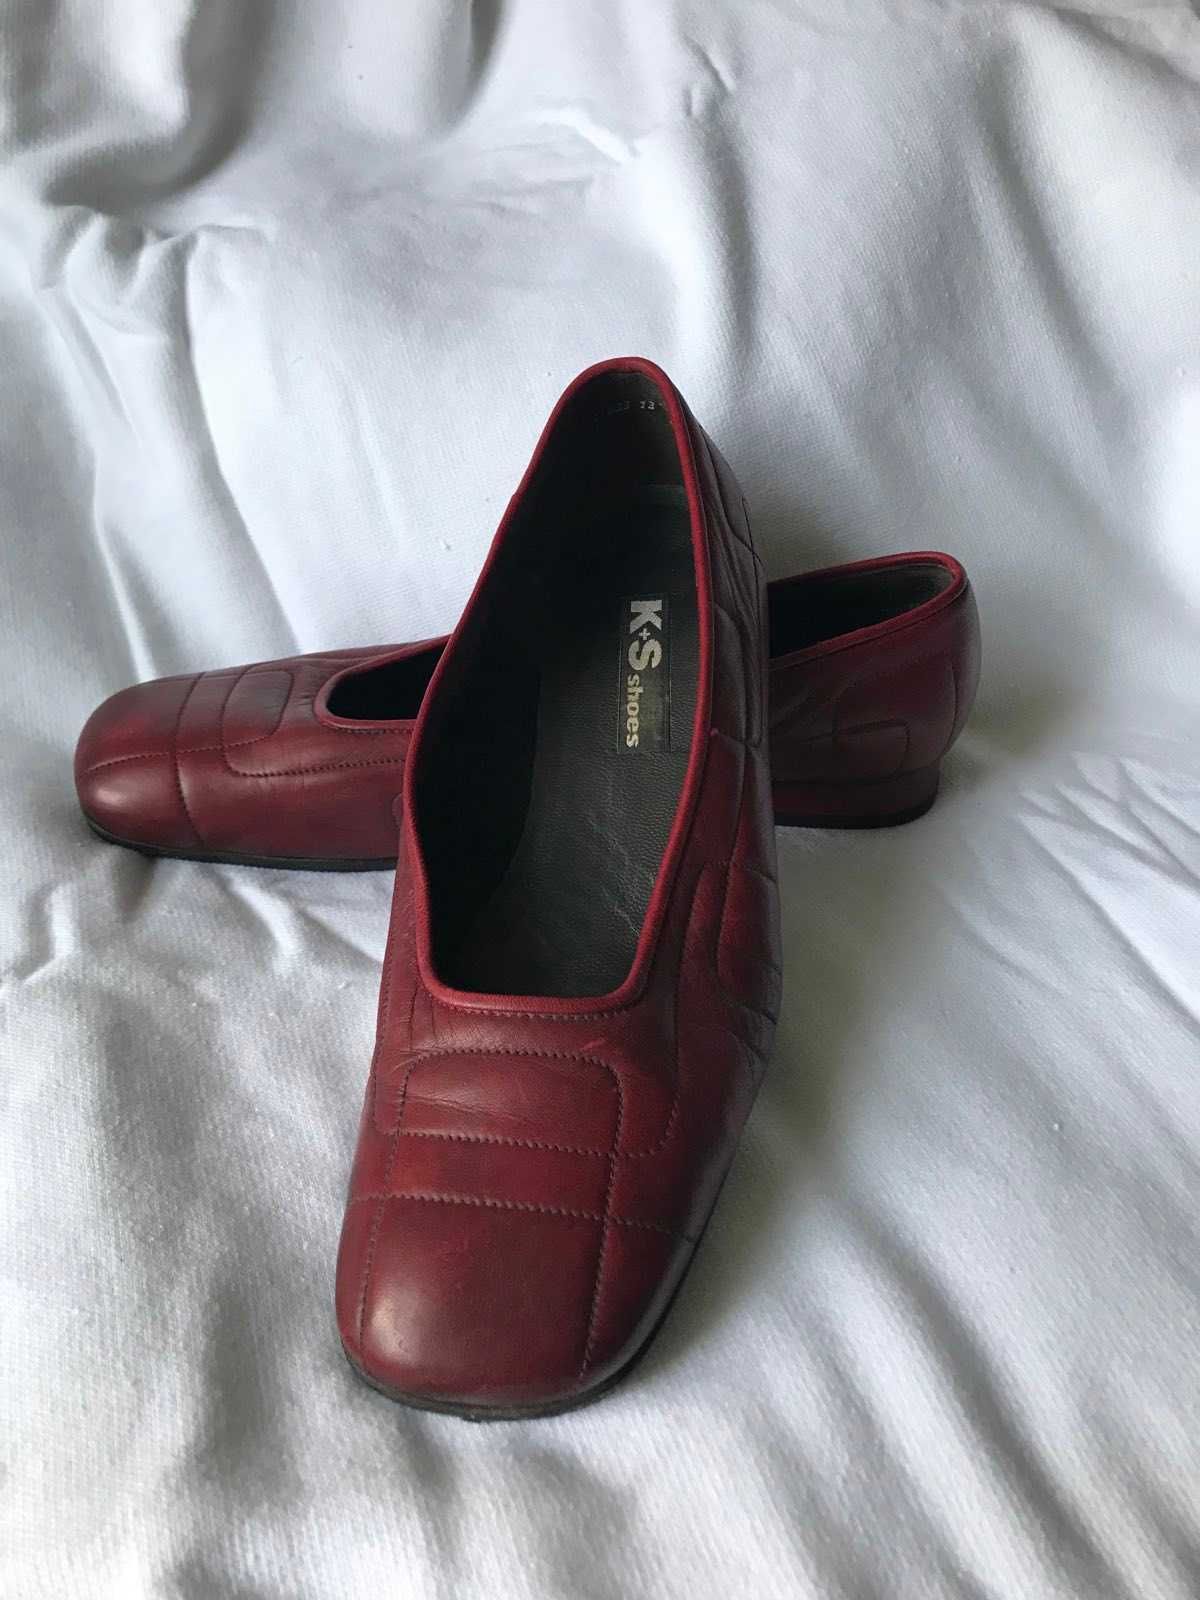 Жіноче взуття туфлі